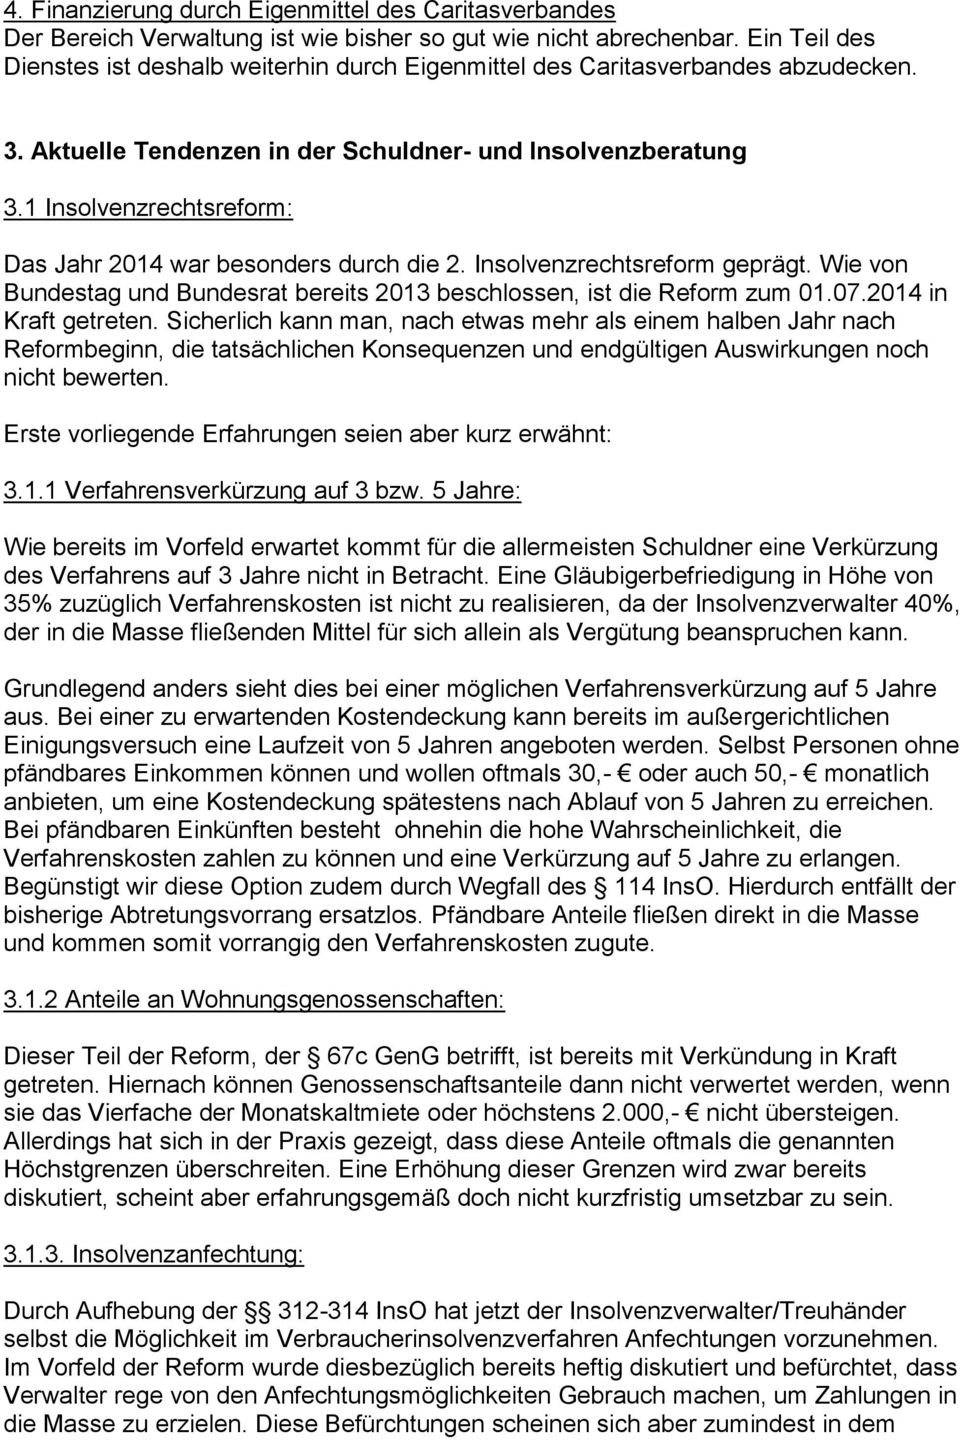 1 Insolvenzrechtsreform: Das Jahr 2014 war besonders durch die 2. Insolvenzrechtsreform geprägt. Wie von Bundestag und Bundesrat bereits 2013 beschlossen, ist die Reform zum 01.07.